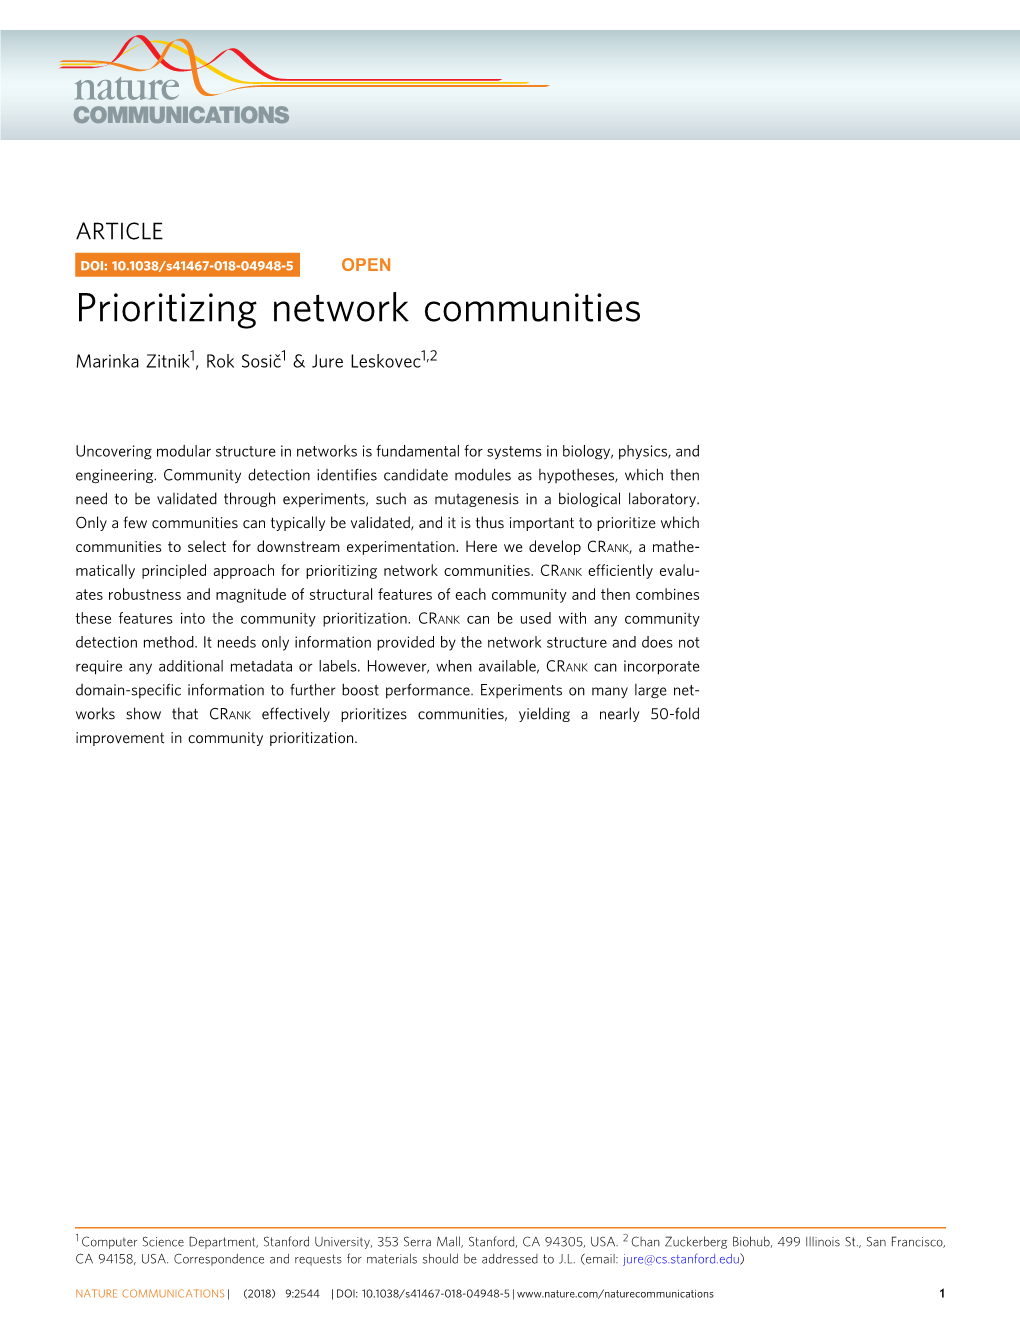 Prioritizing Network Communities